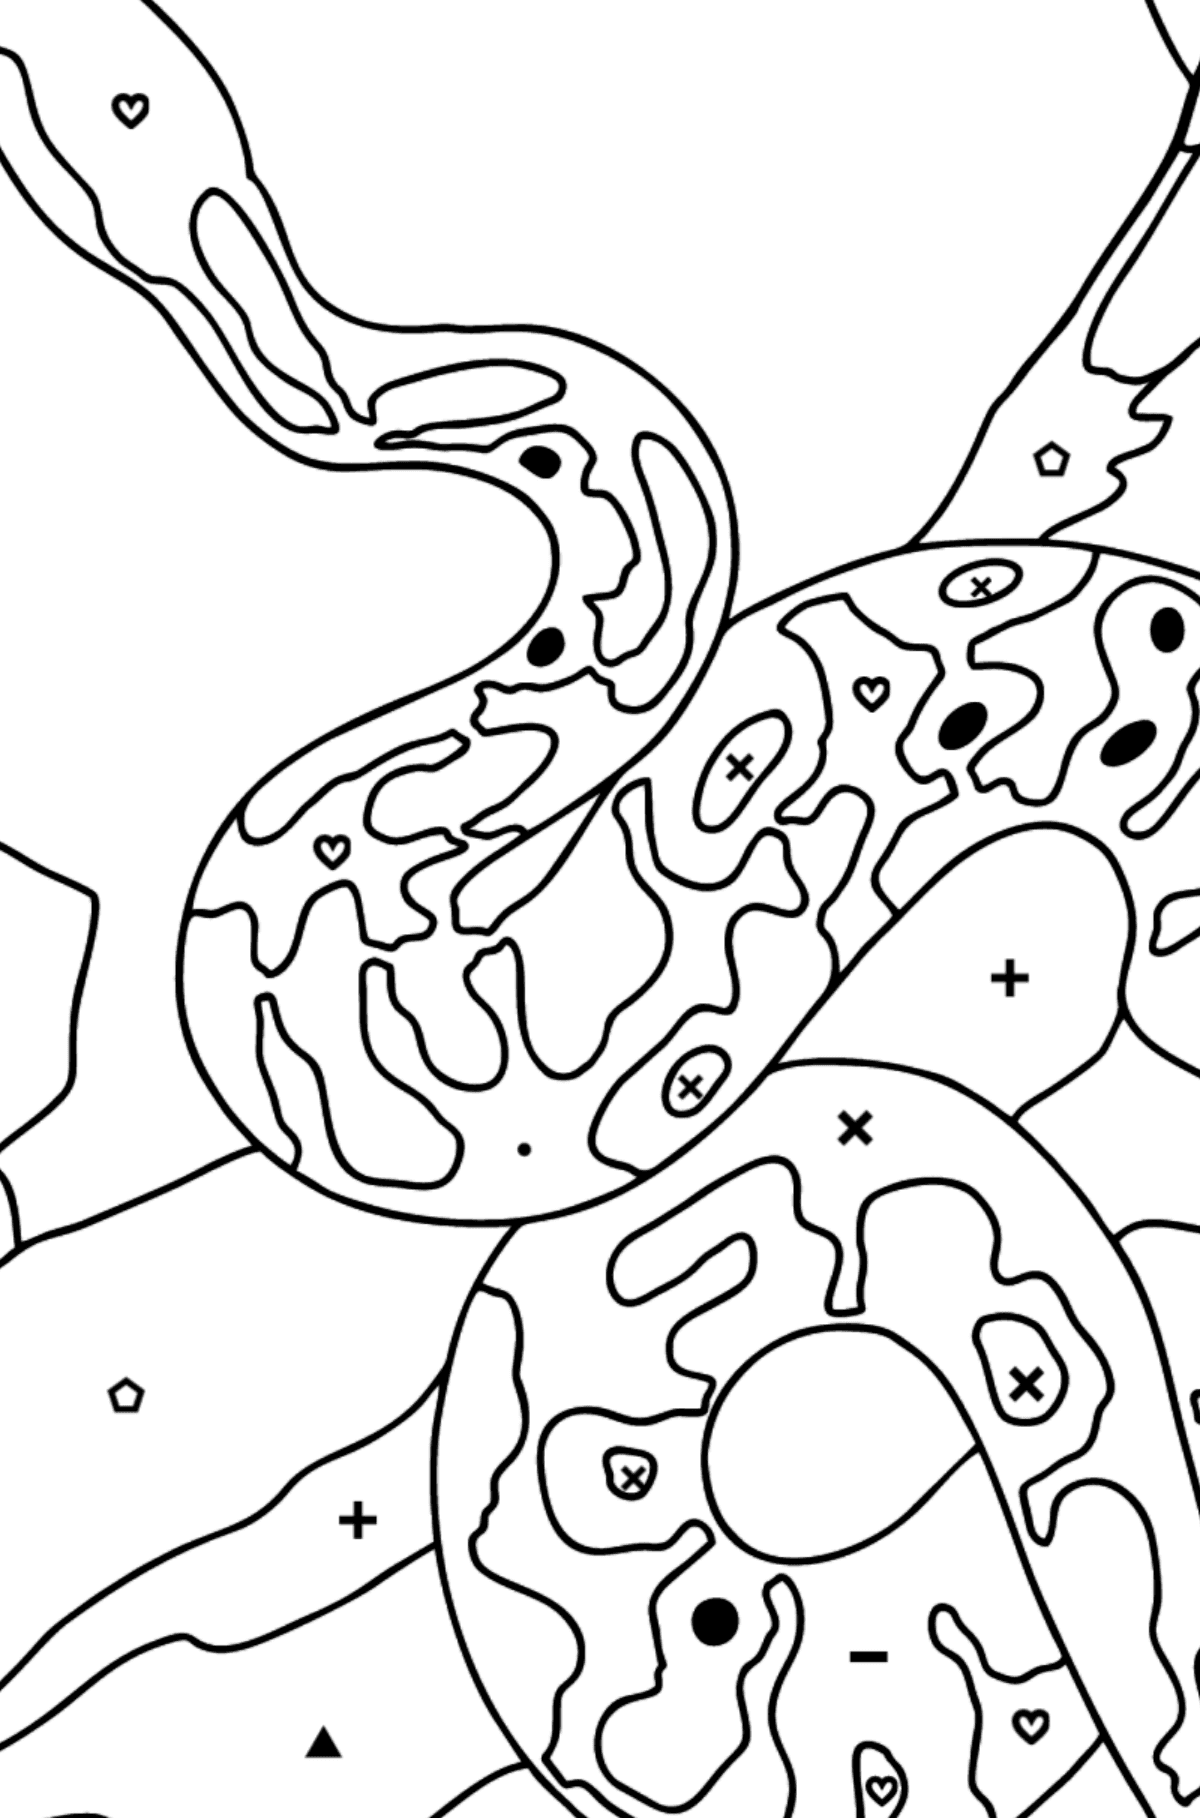 Tegning til farvning slange (vanskeligt) - farvelægning side efter symboler og geometriske former for børn